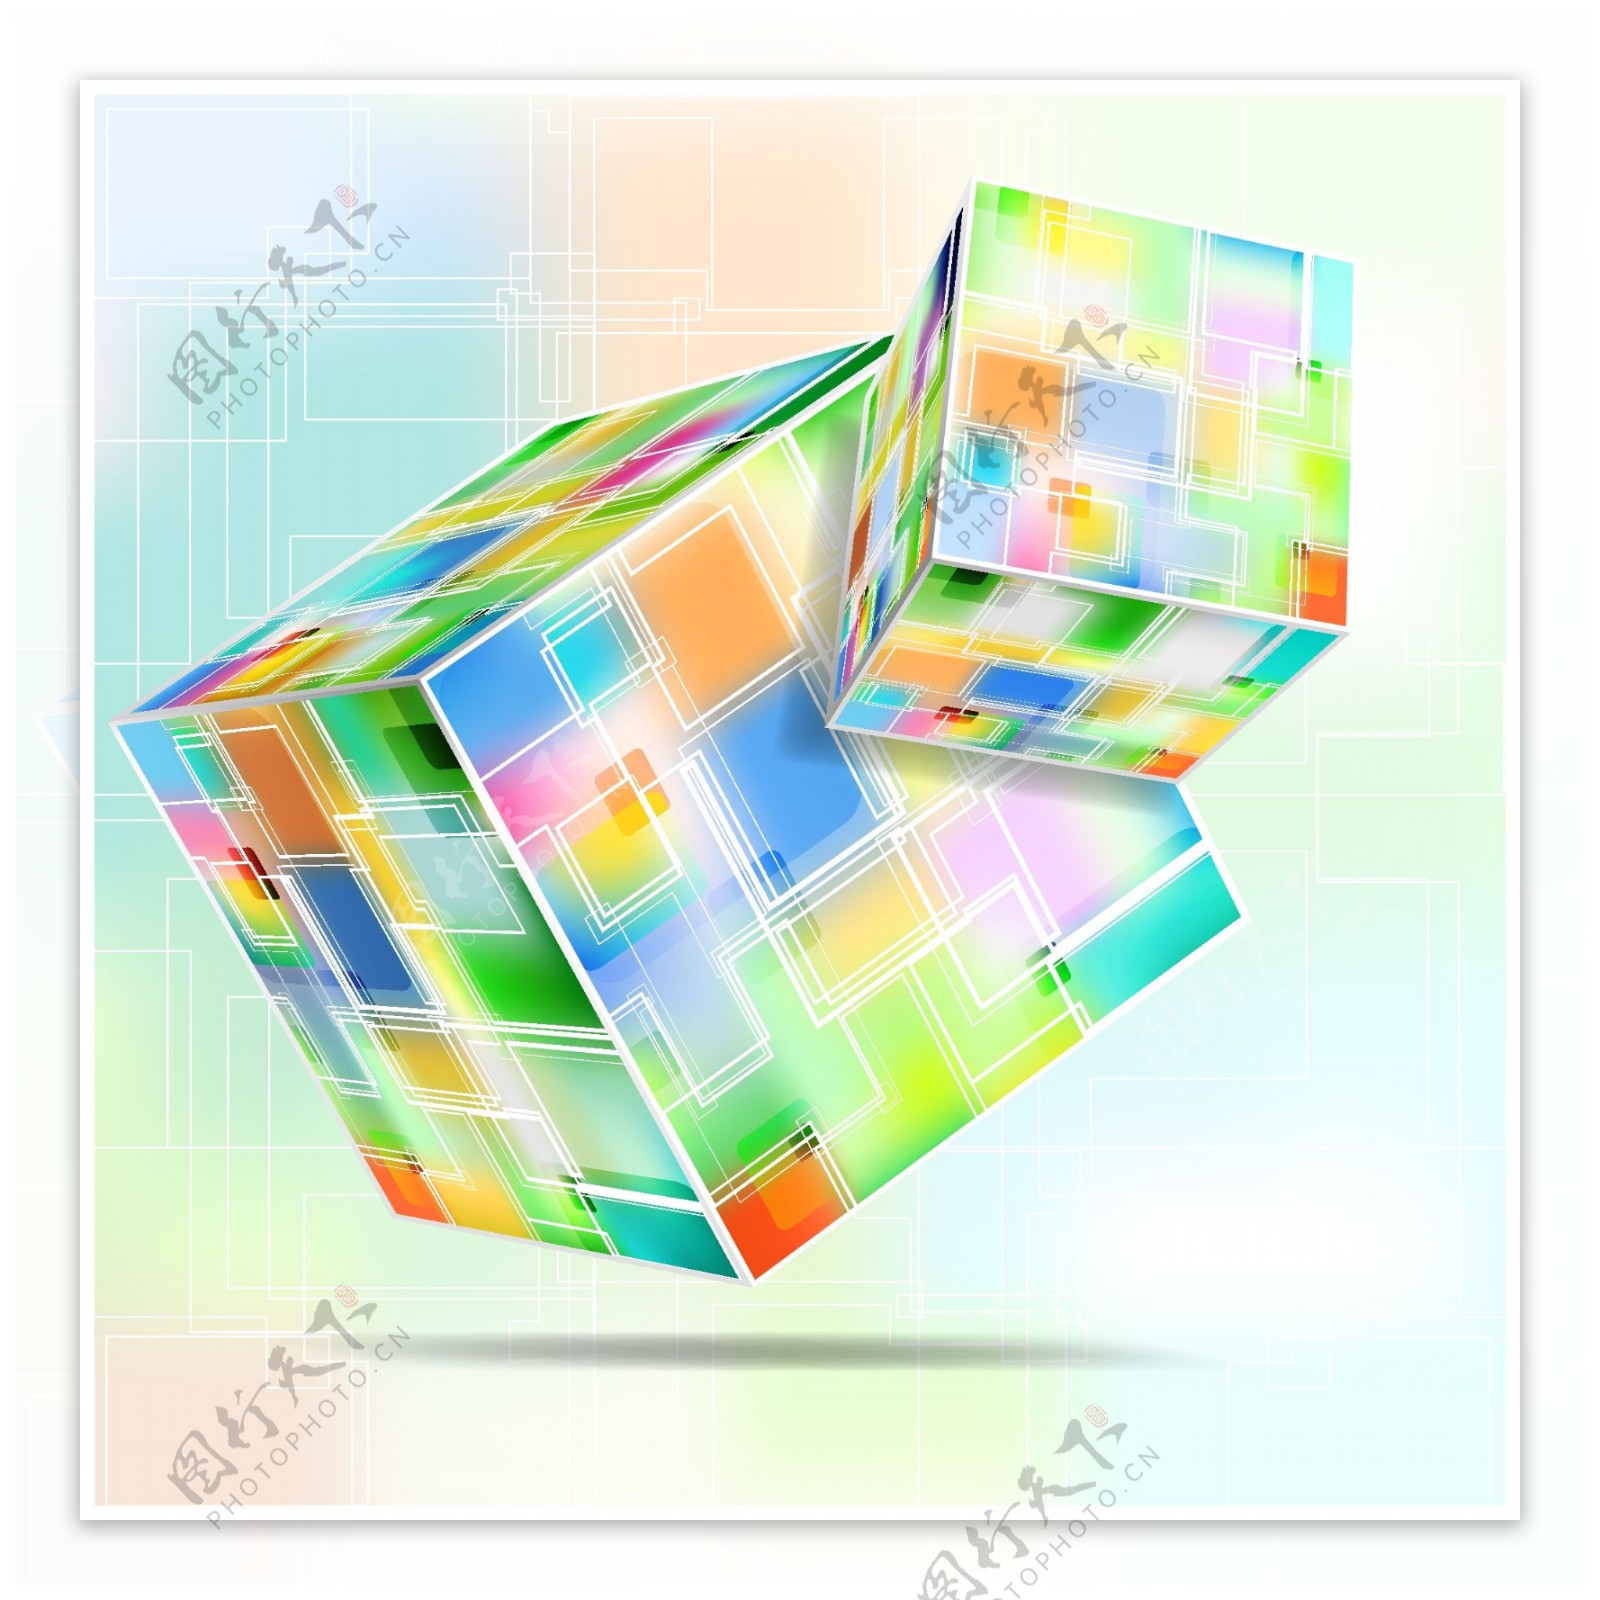 炫彩立方体背景矢量素材